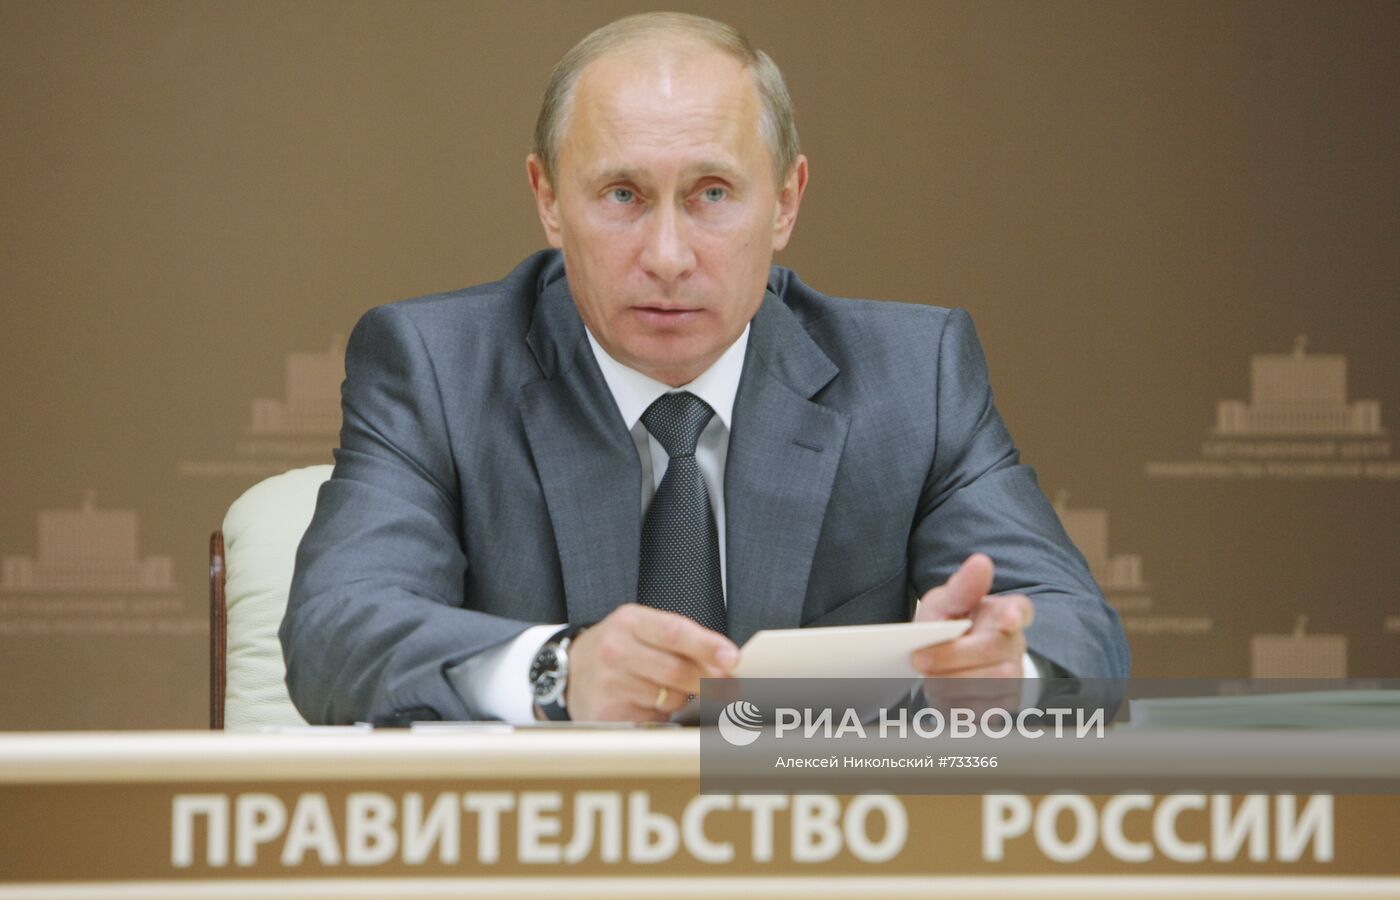 Владимир Путин провел селекторное совещание